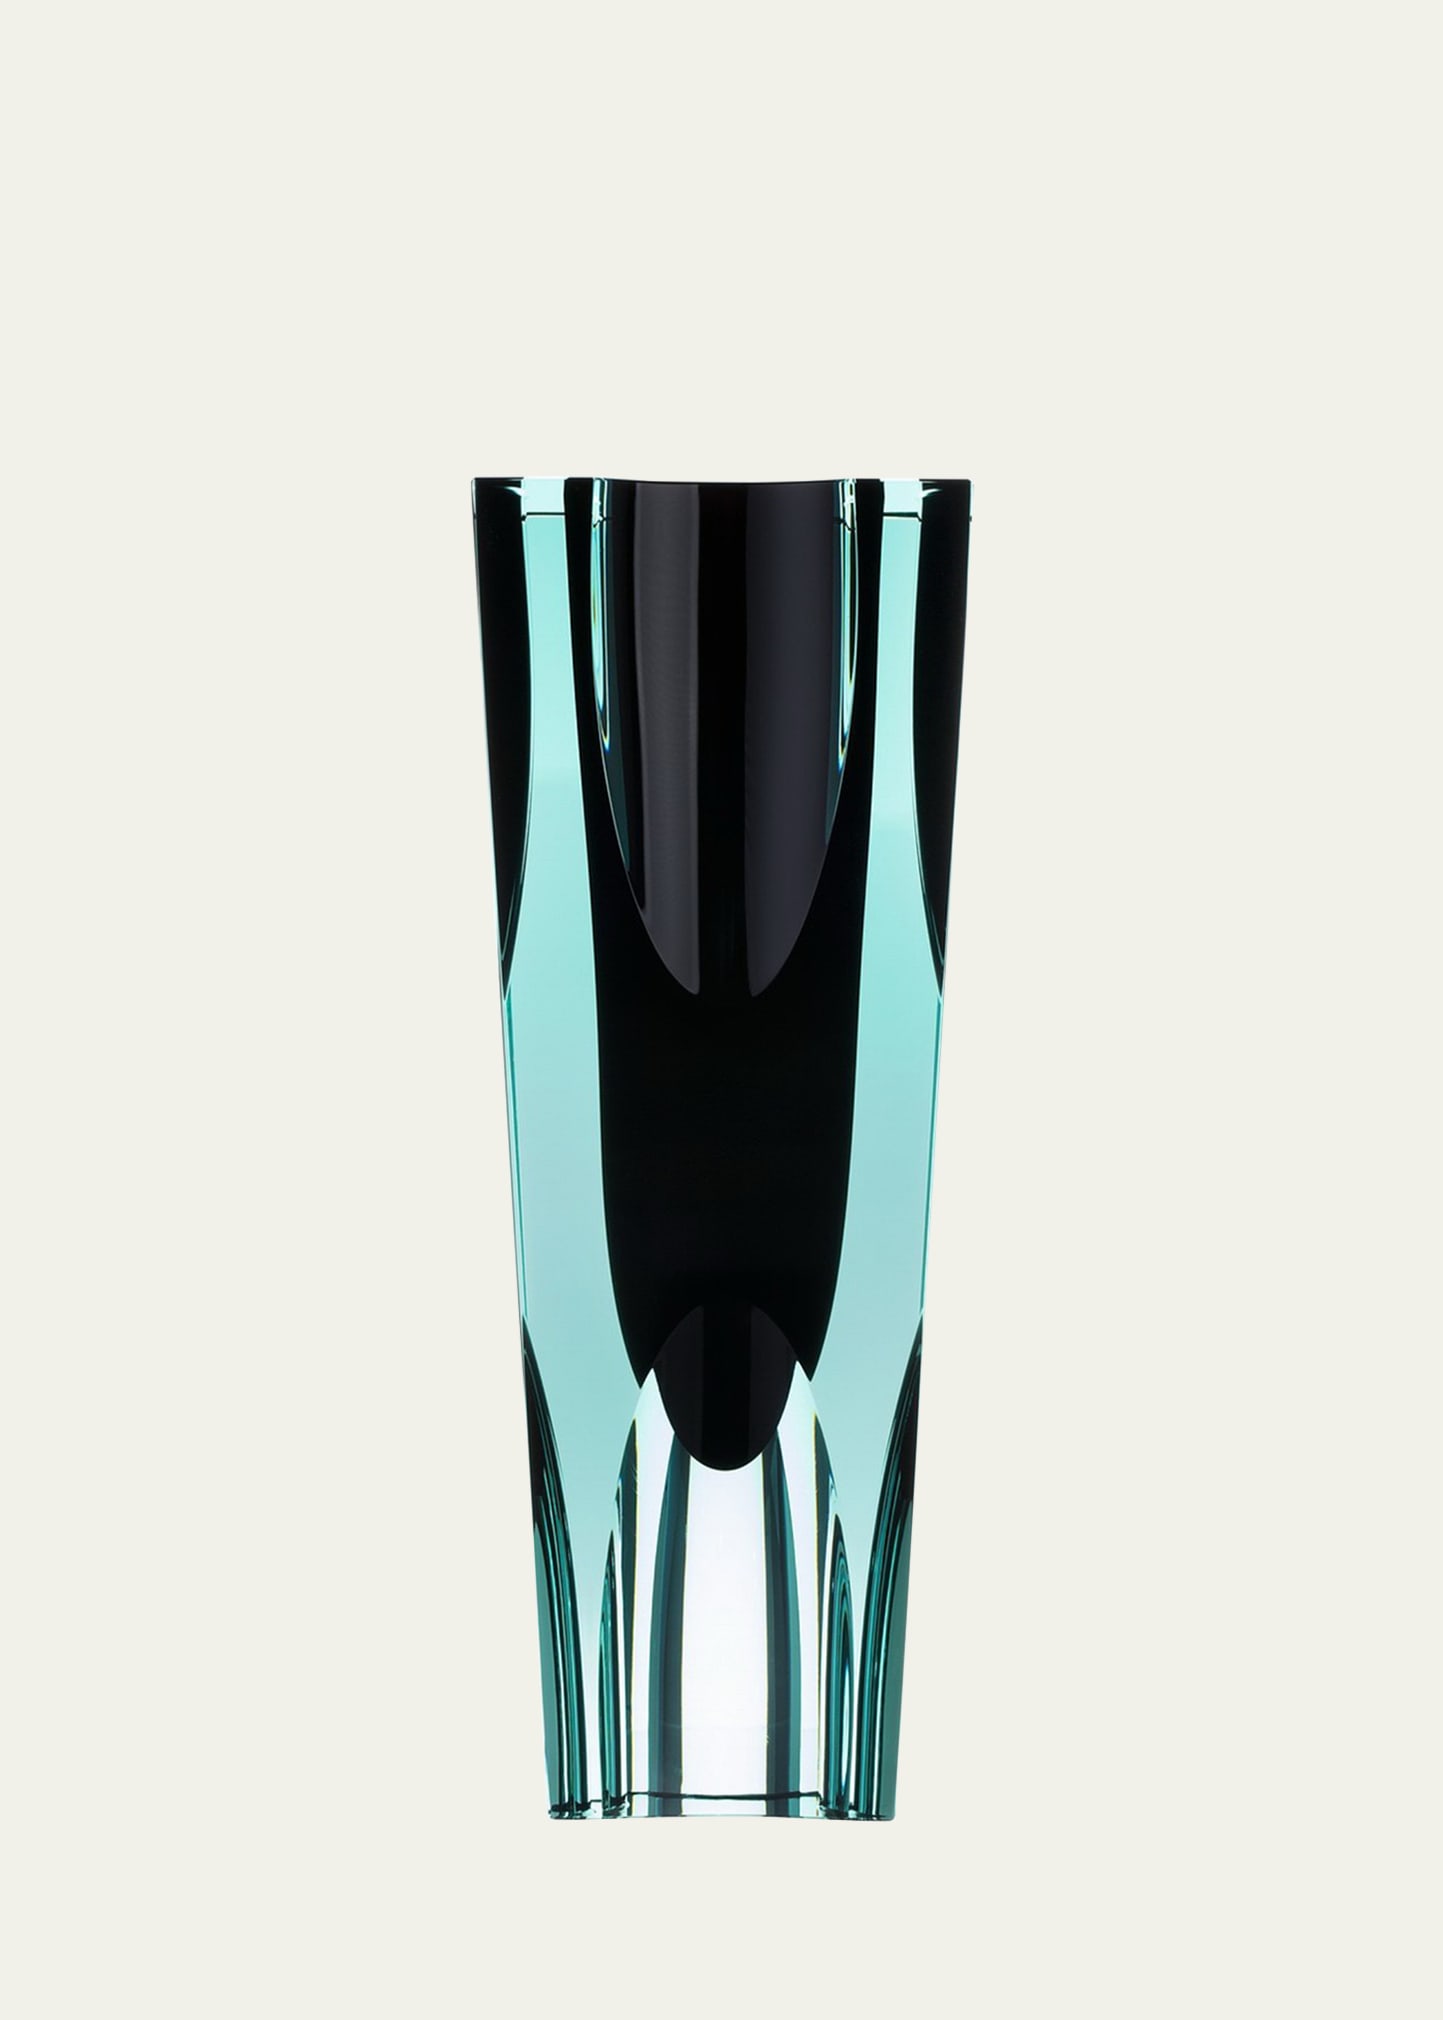 Moser Ellipse I Crystal Vase In Black